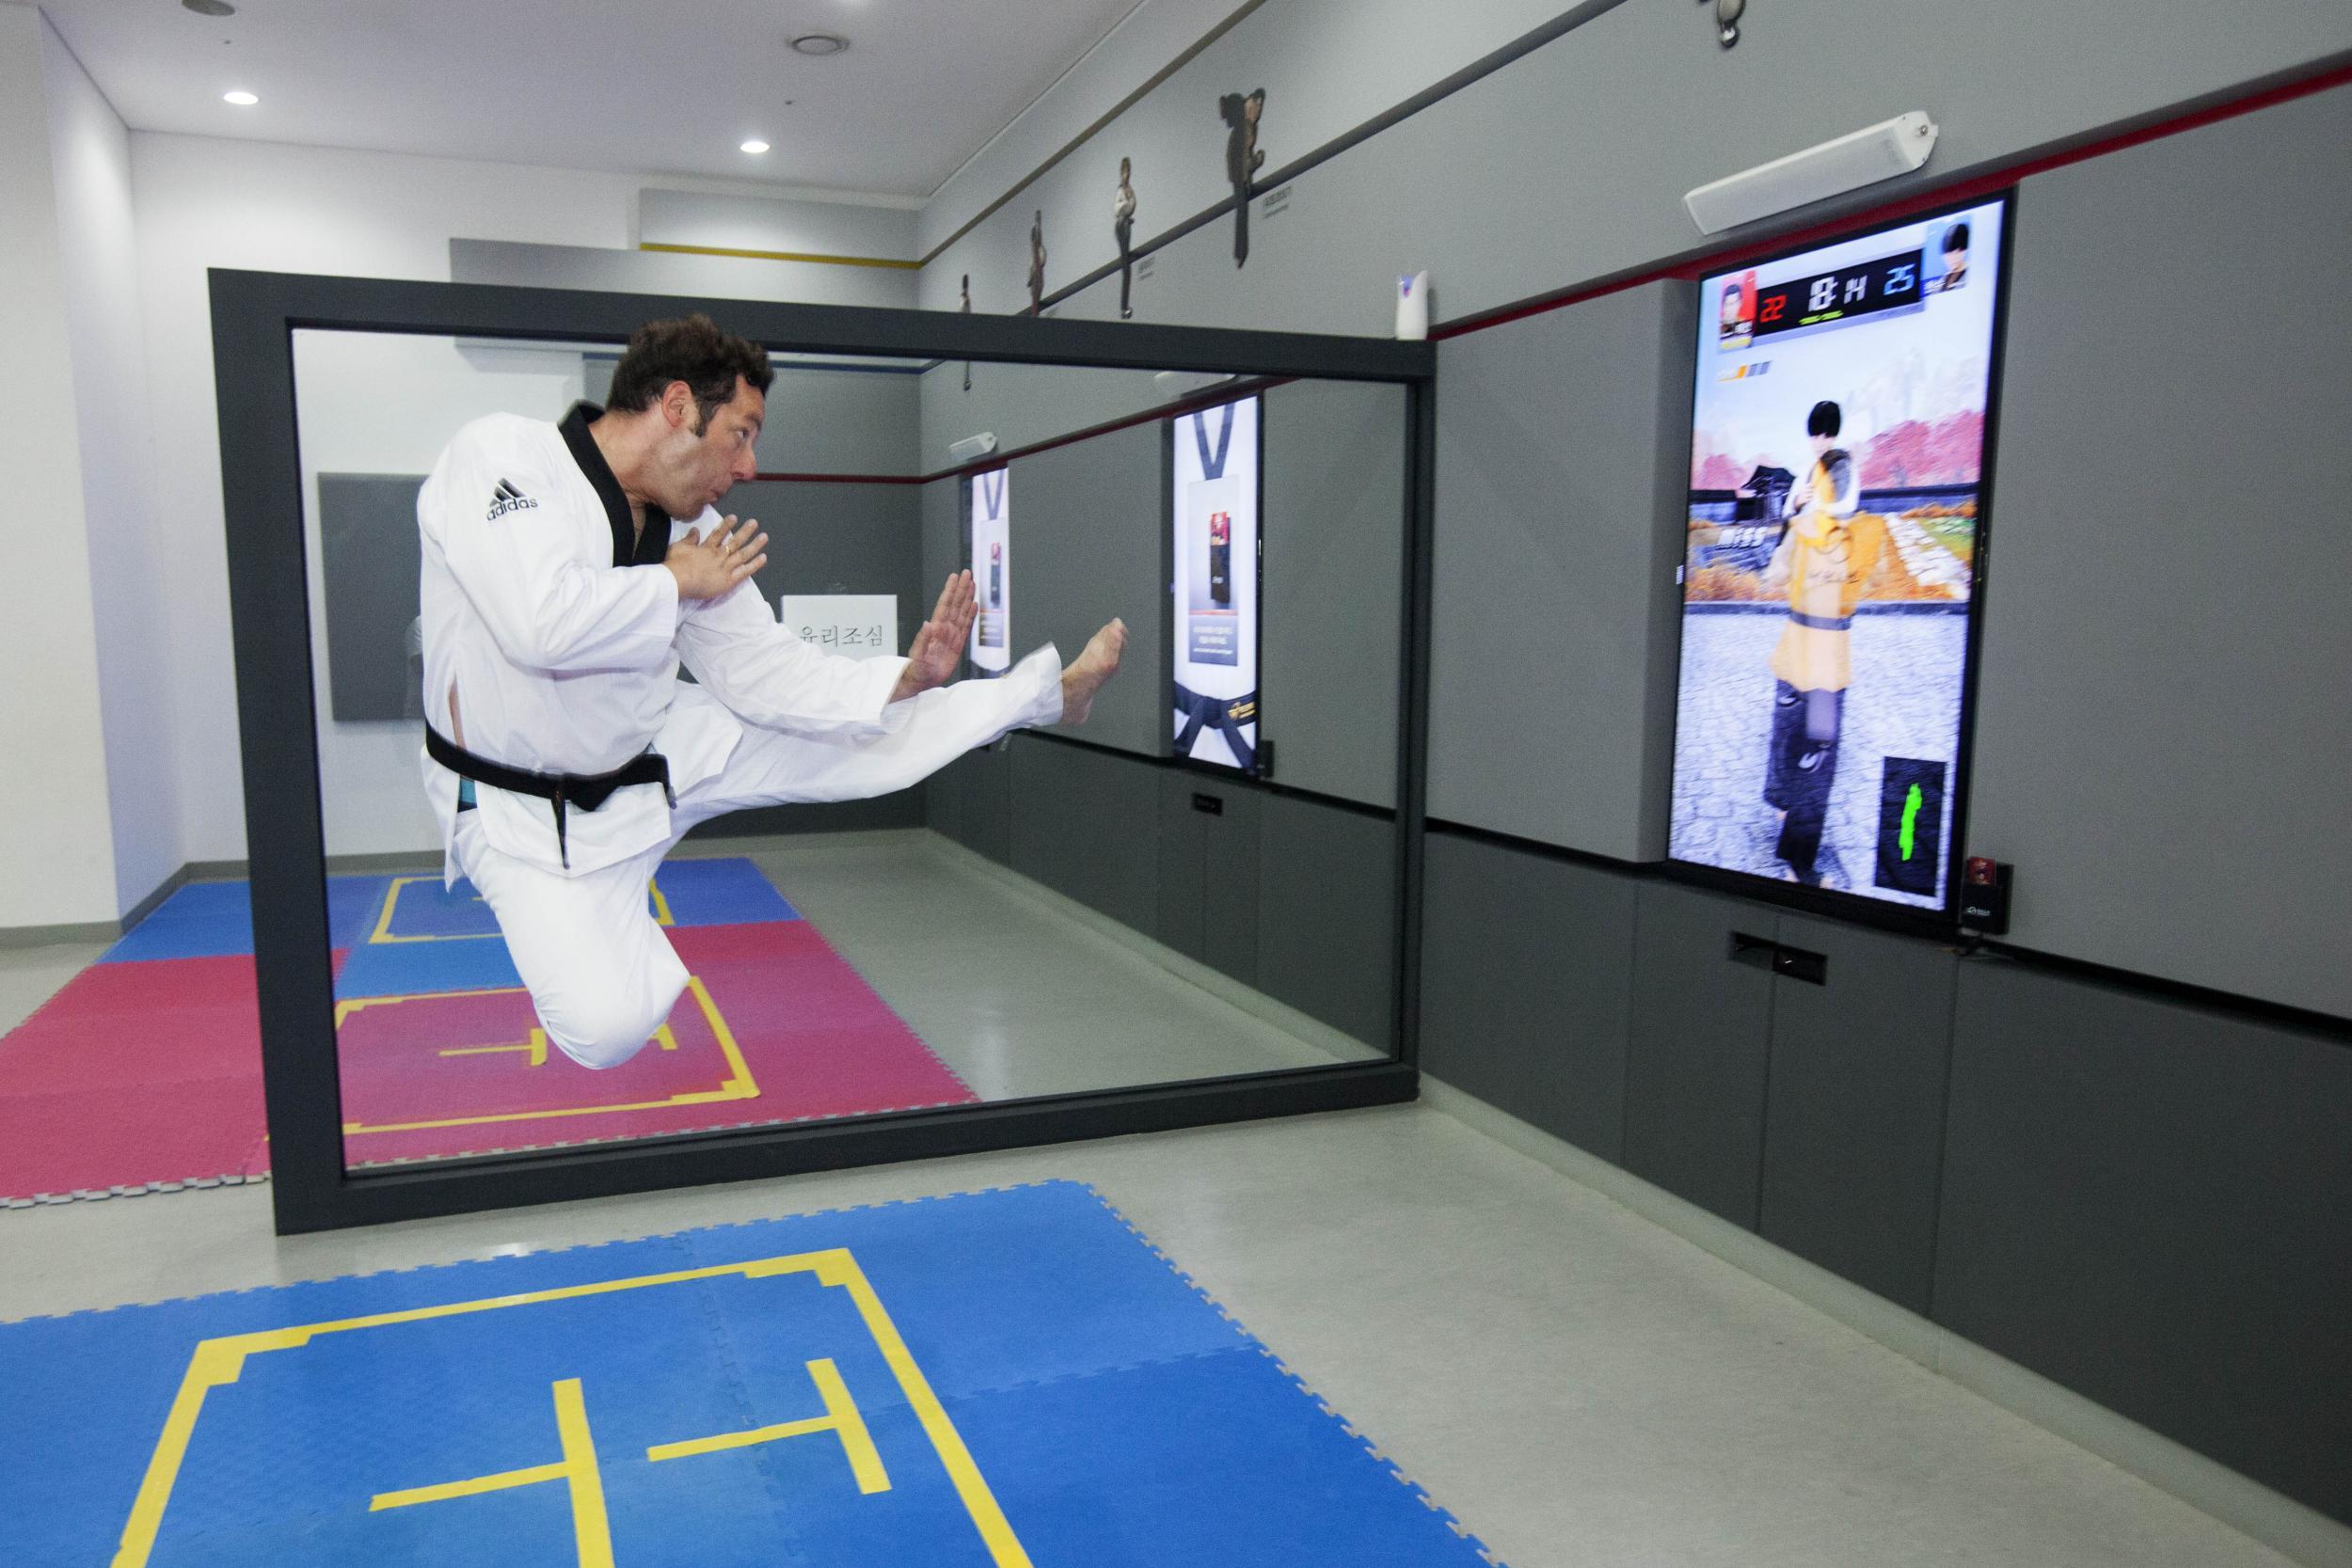 Taekwondo kick at the 'Experience Centre'